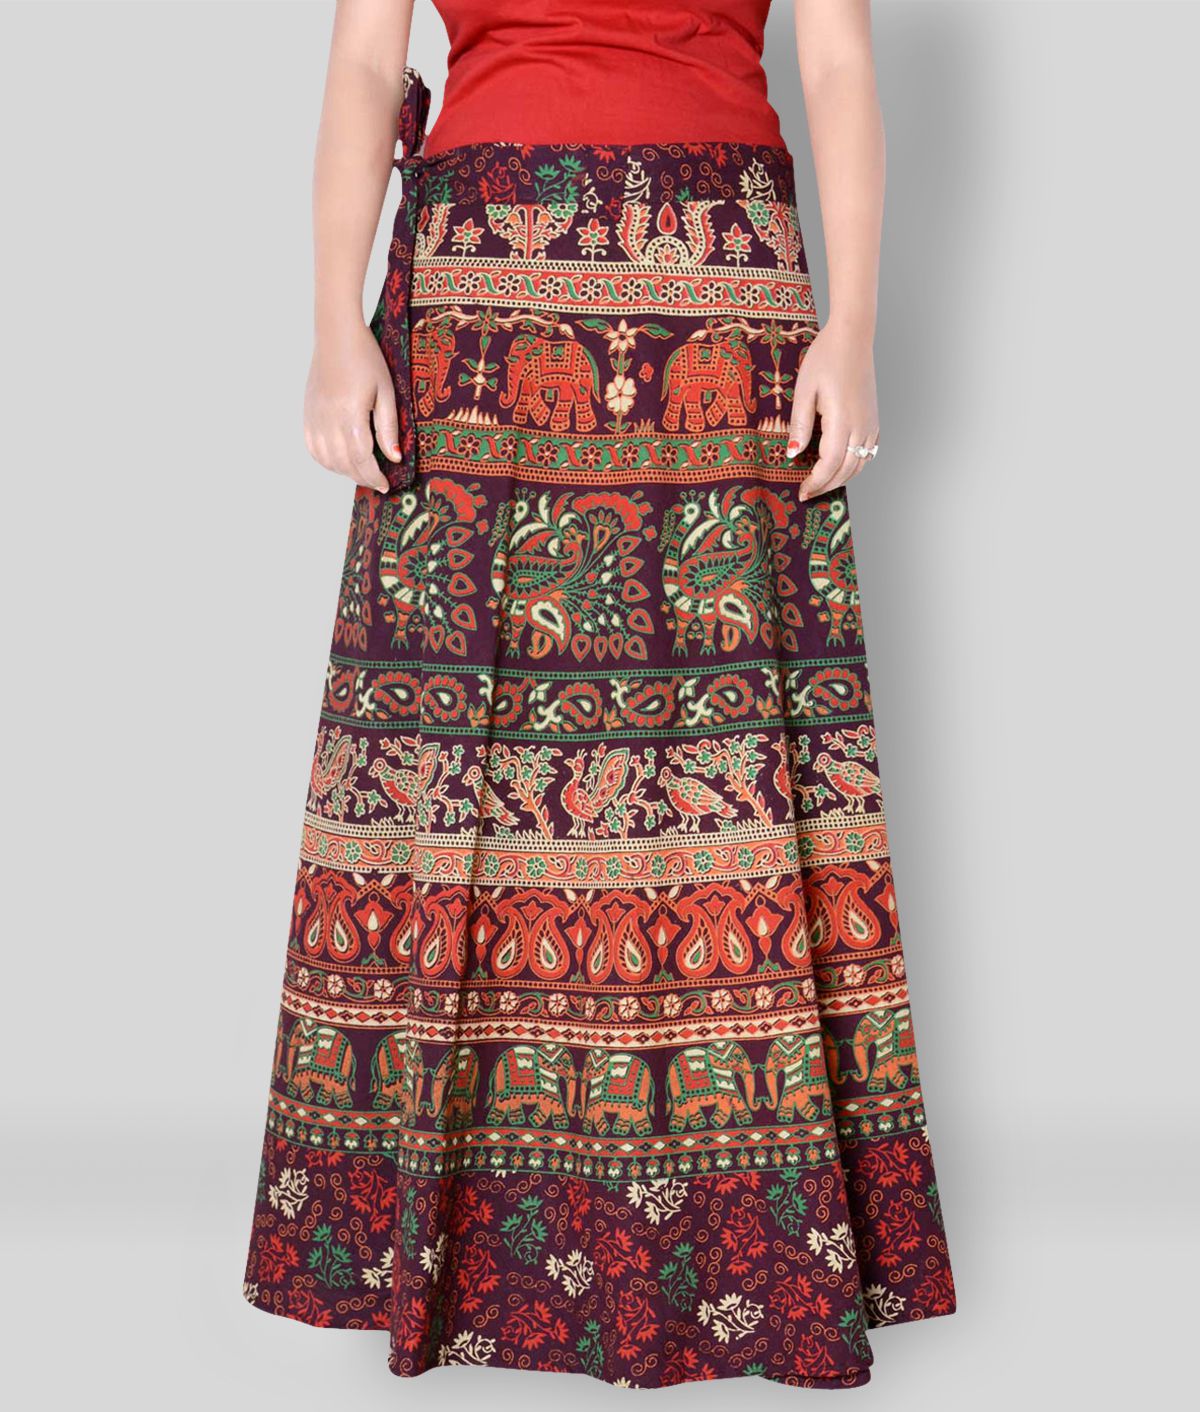 Rajvila - Brown Cotton Women's Wrap Skirt ( Pack of 1 )